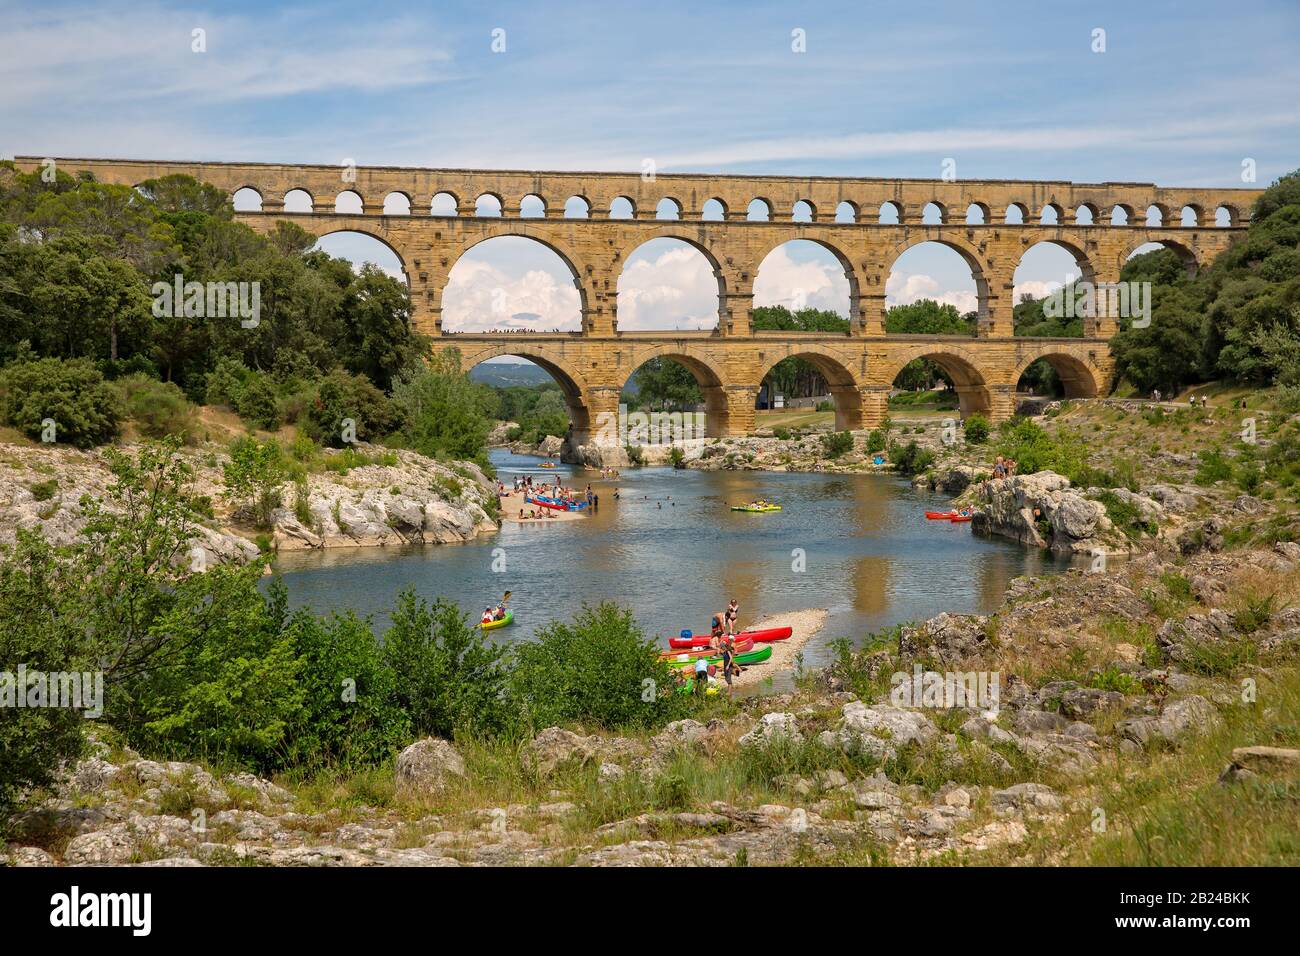 Pont du Gard, Provenza, Francia - Jun 05 2017: La gente kayak en el río Gardon en el Pont du Gard, un antiguo acueducto romano, cerca de Nimes. Foto de stock